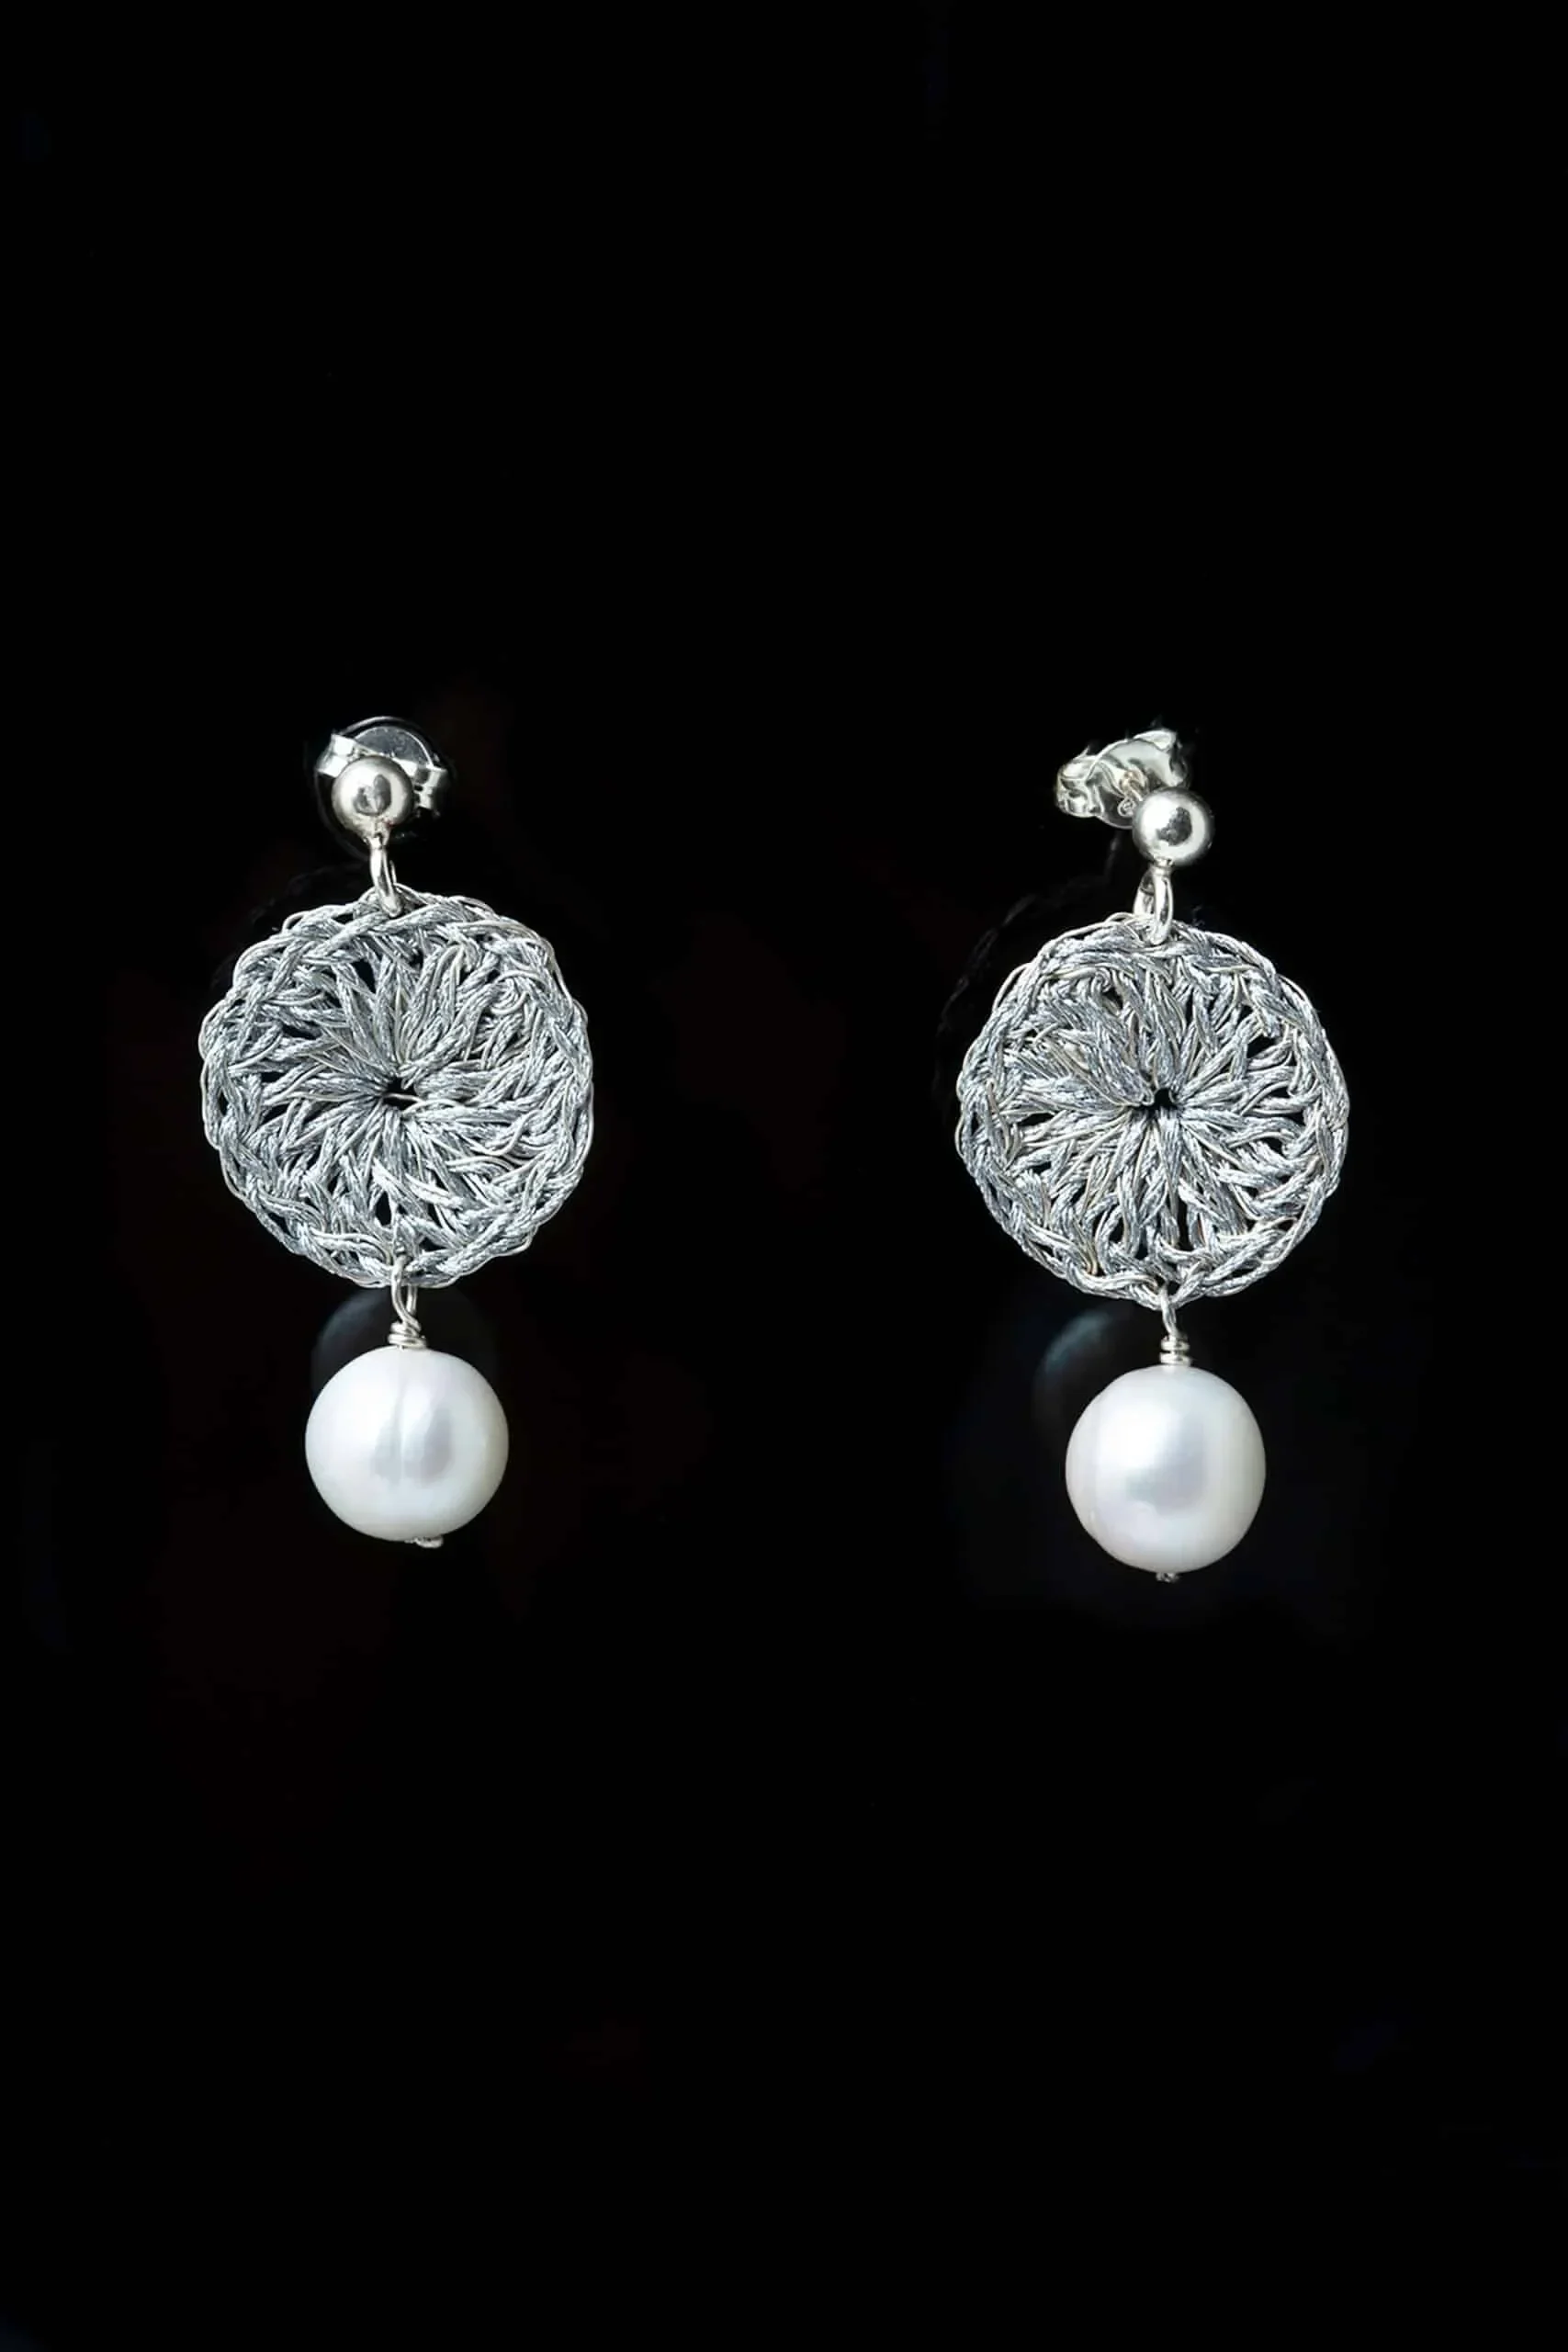 Handmade Jewellery | Crochet knit silver earrings with pearls gallery 1